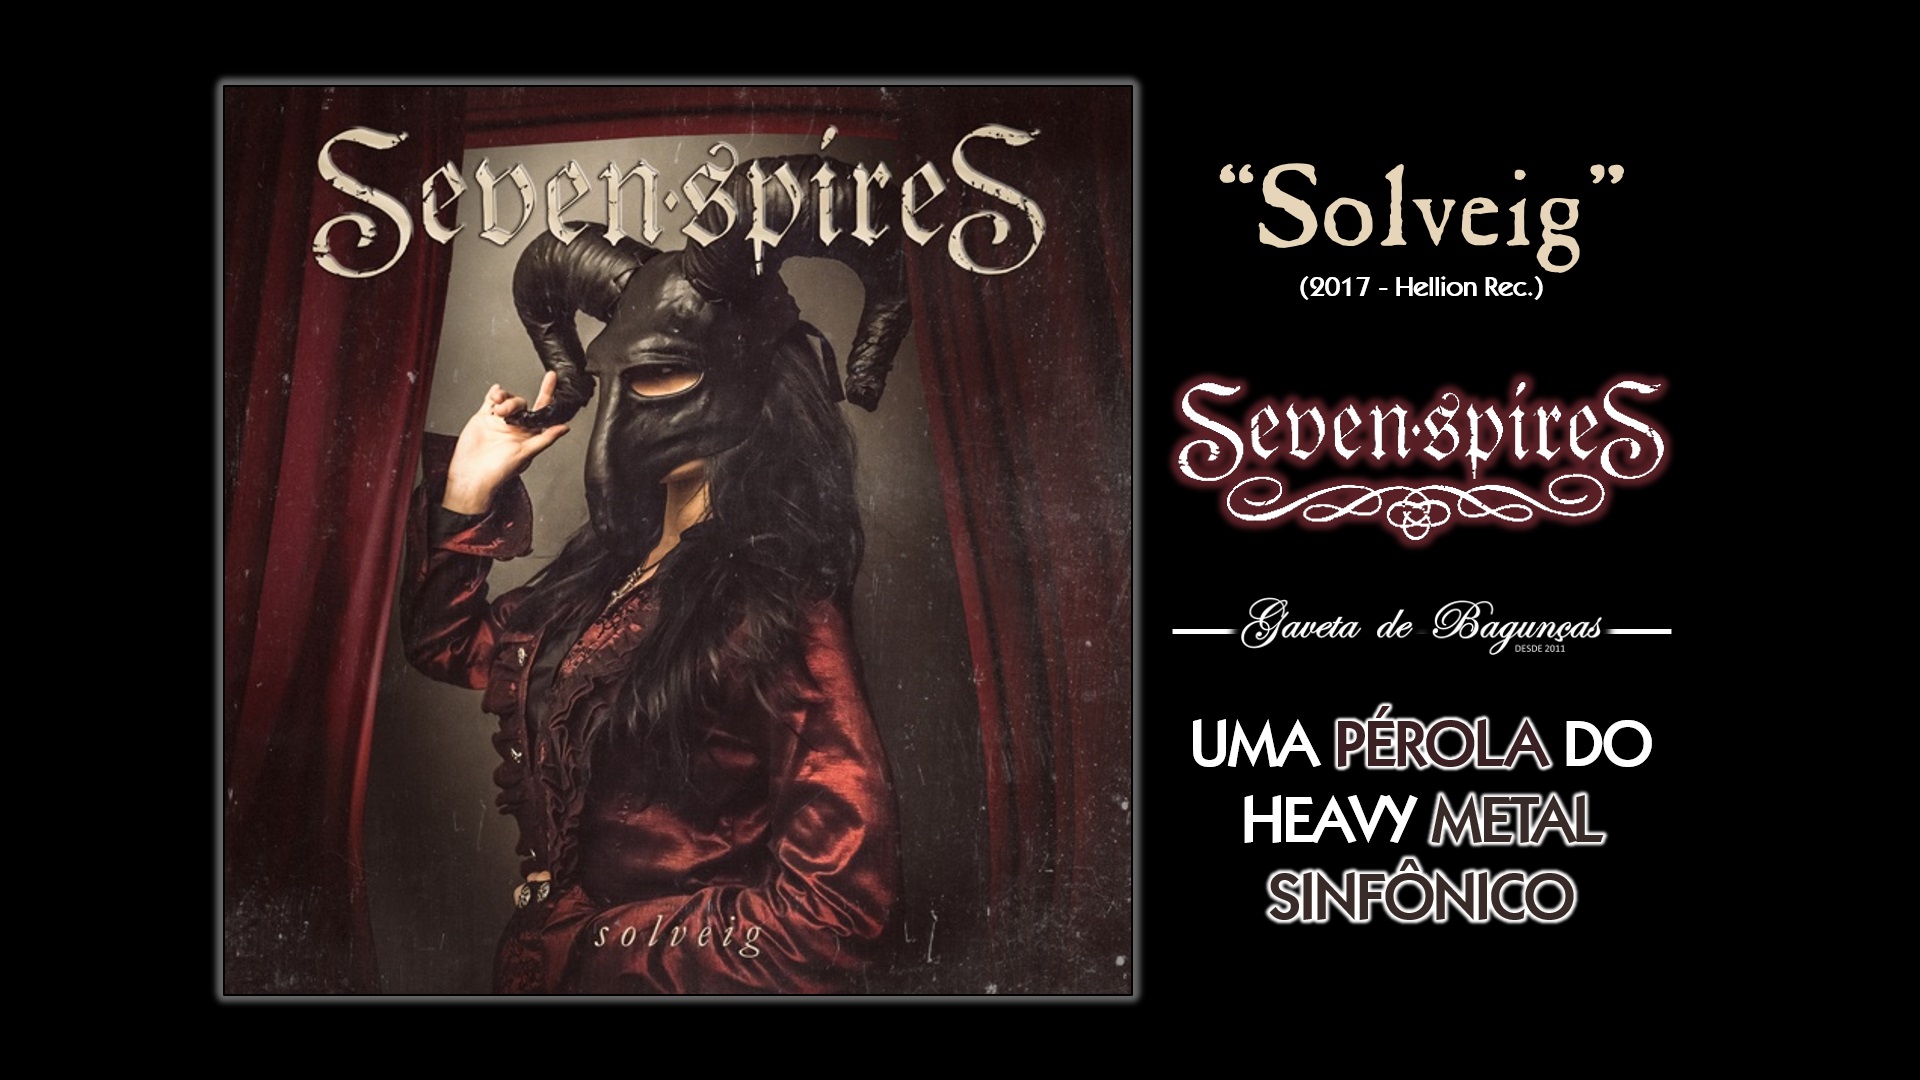 "Solveig", primeiro álbum da banda Seven Spires, traz  músicas obrigatórias para qualquer fã de heavy metal sinfônico. Com vocais poderosos, instrumentação complexa e narrativa cativante, este álbum é uma verdadeira pérola do symphonic metal que precisa ser descoberta.